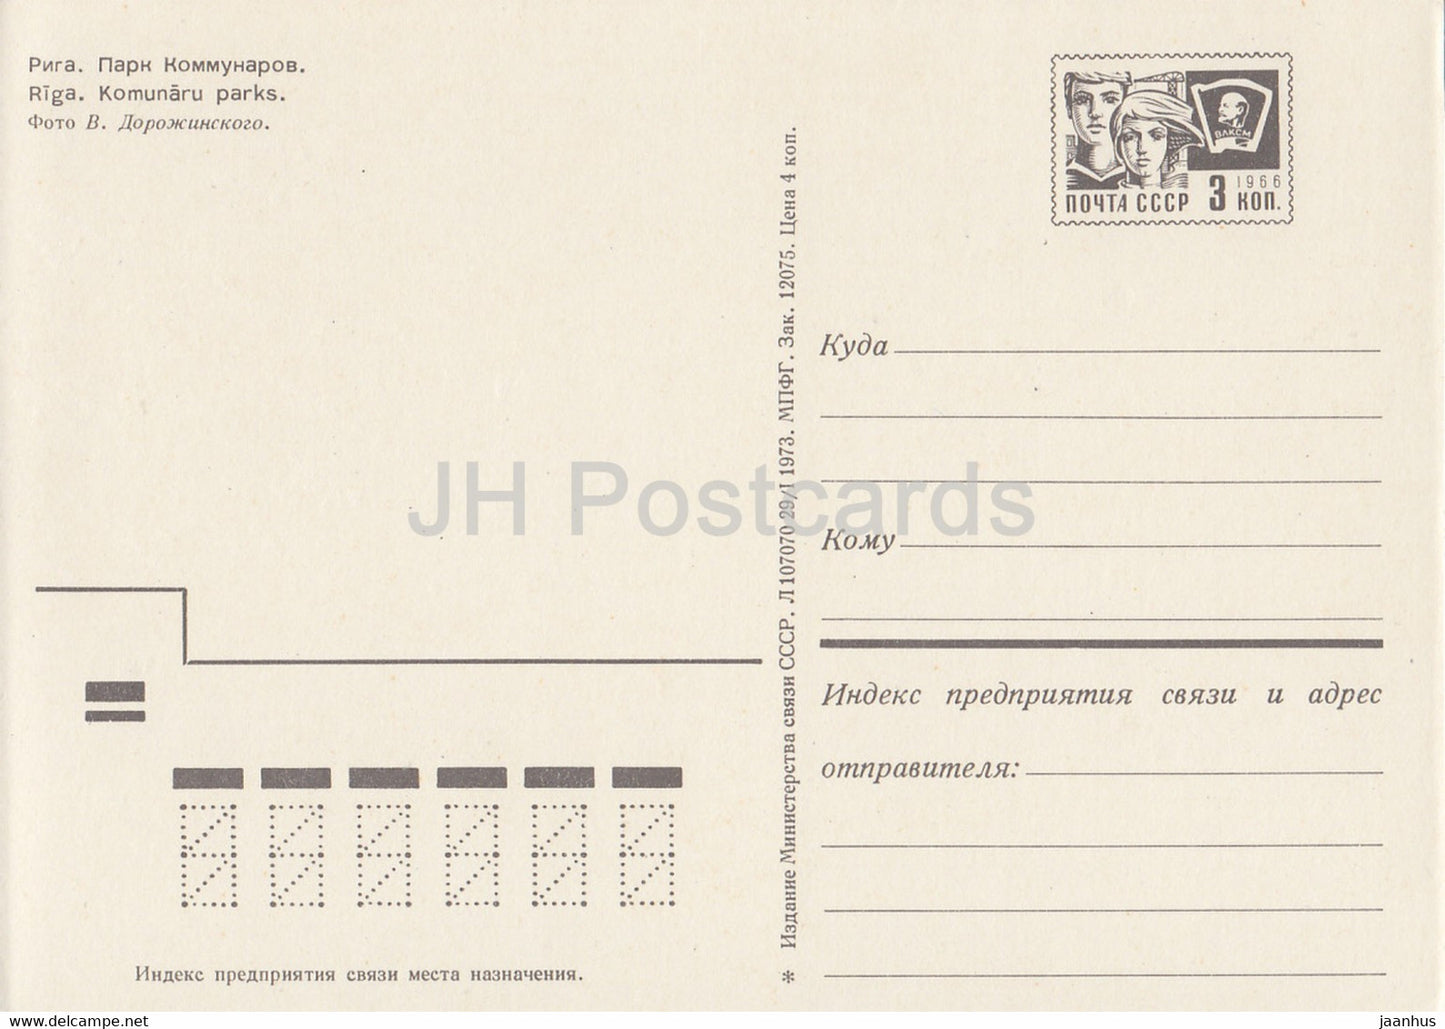 Riga - Parc des Communards - entier postal - 1973 - Lettonie URSS - inutilisé